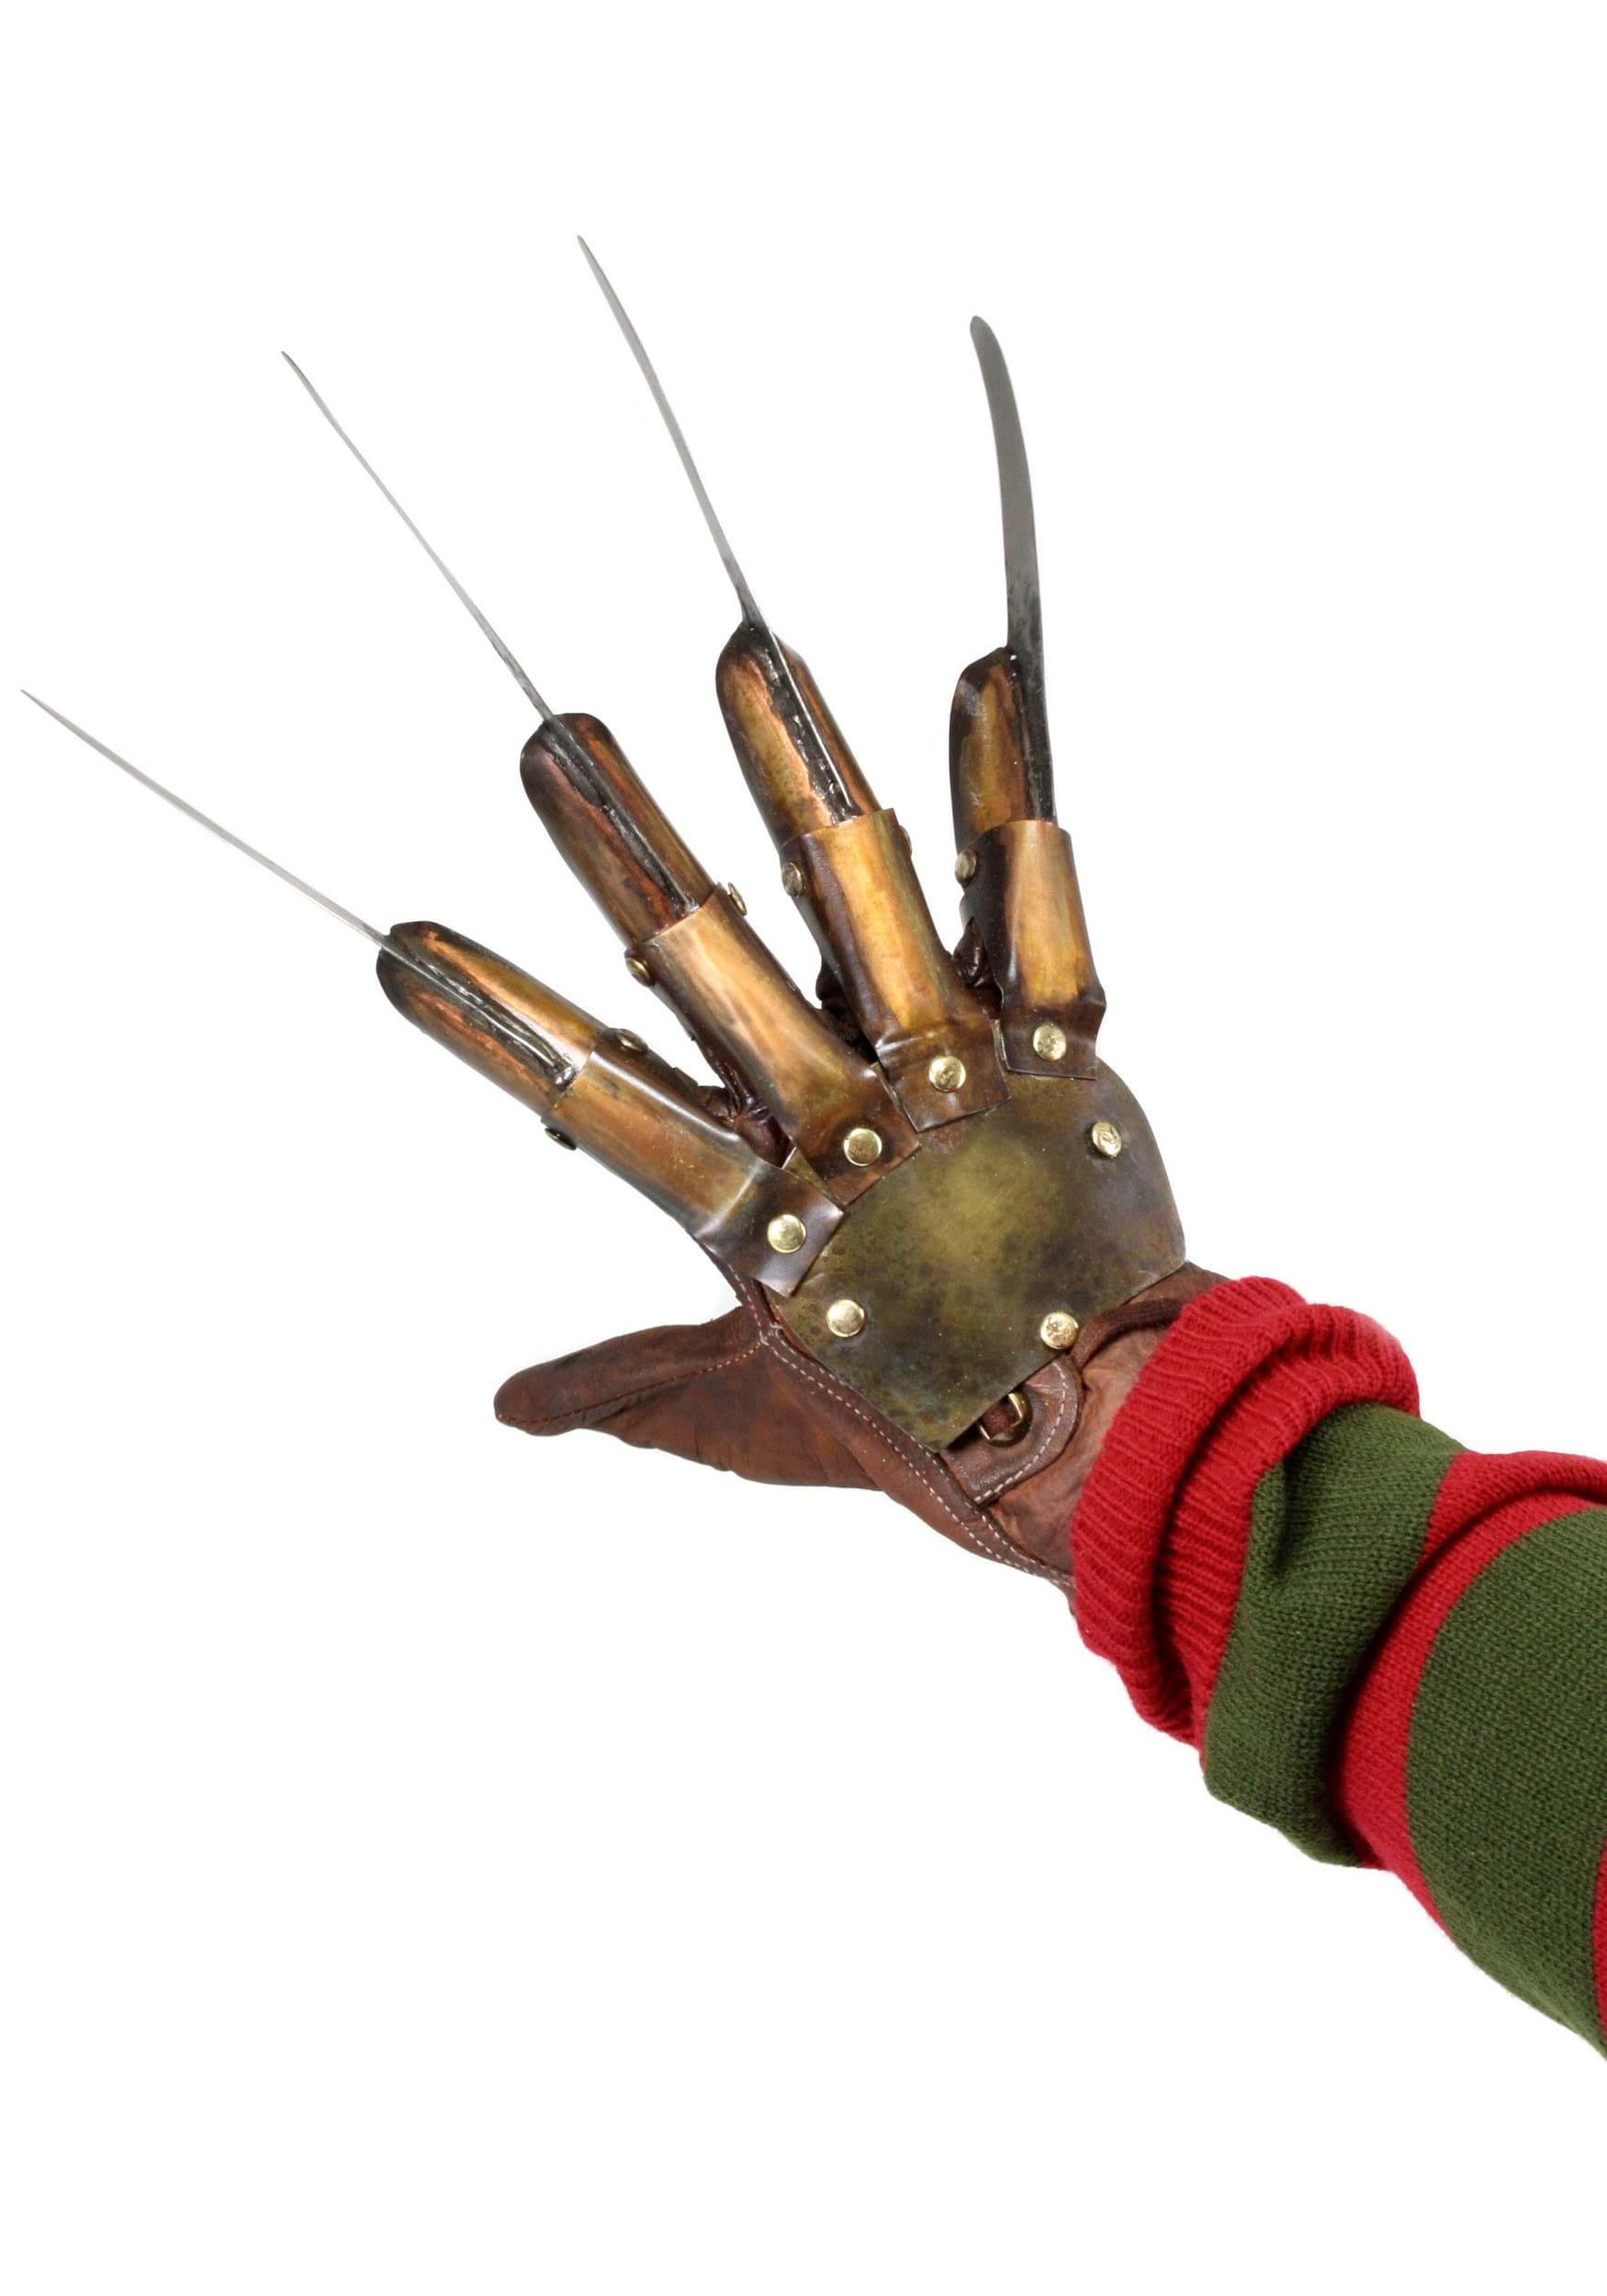 Nightmare On Elm Street Part III Dream Warriors Prop Replica Glove , Collectible Prop Replicas